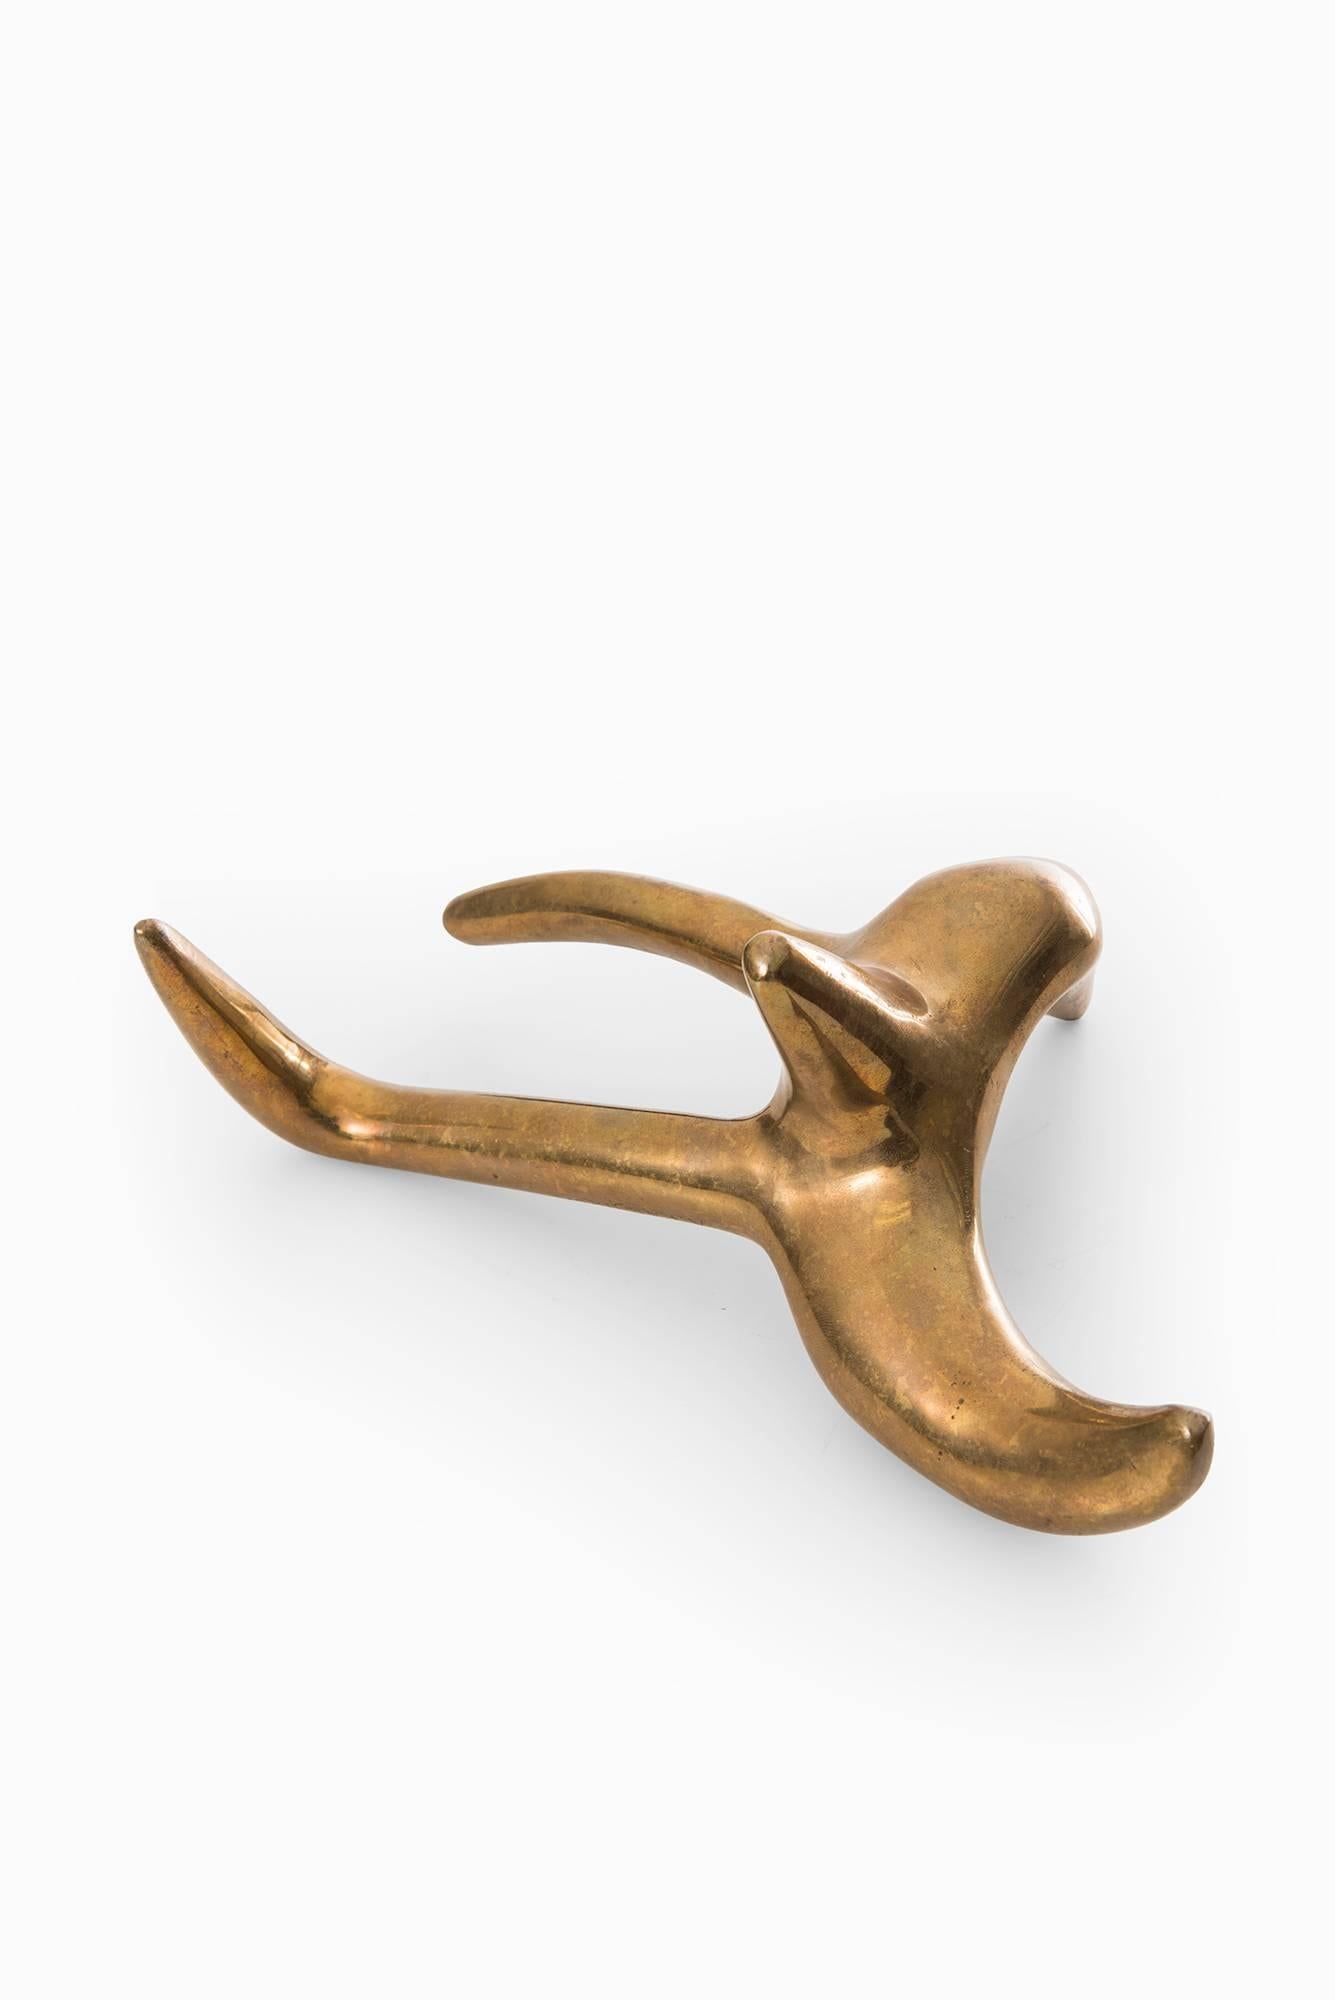 Scandinavian Modern Arvid Källström Sculpture in Brass